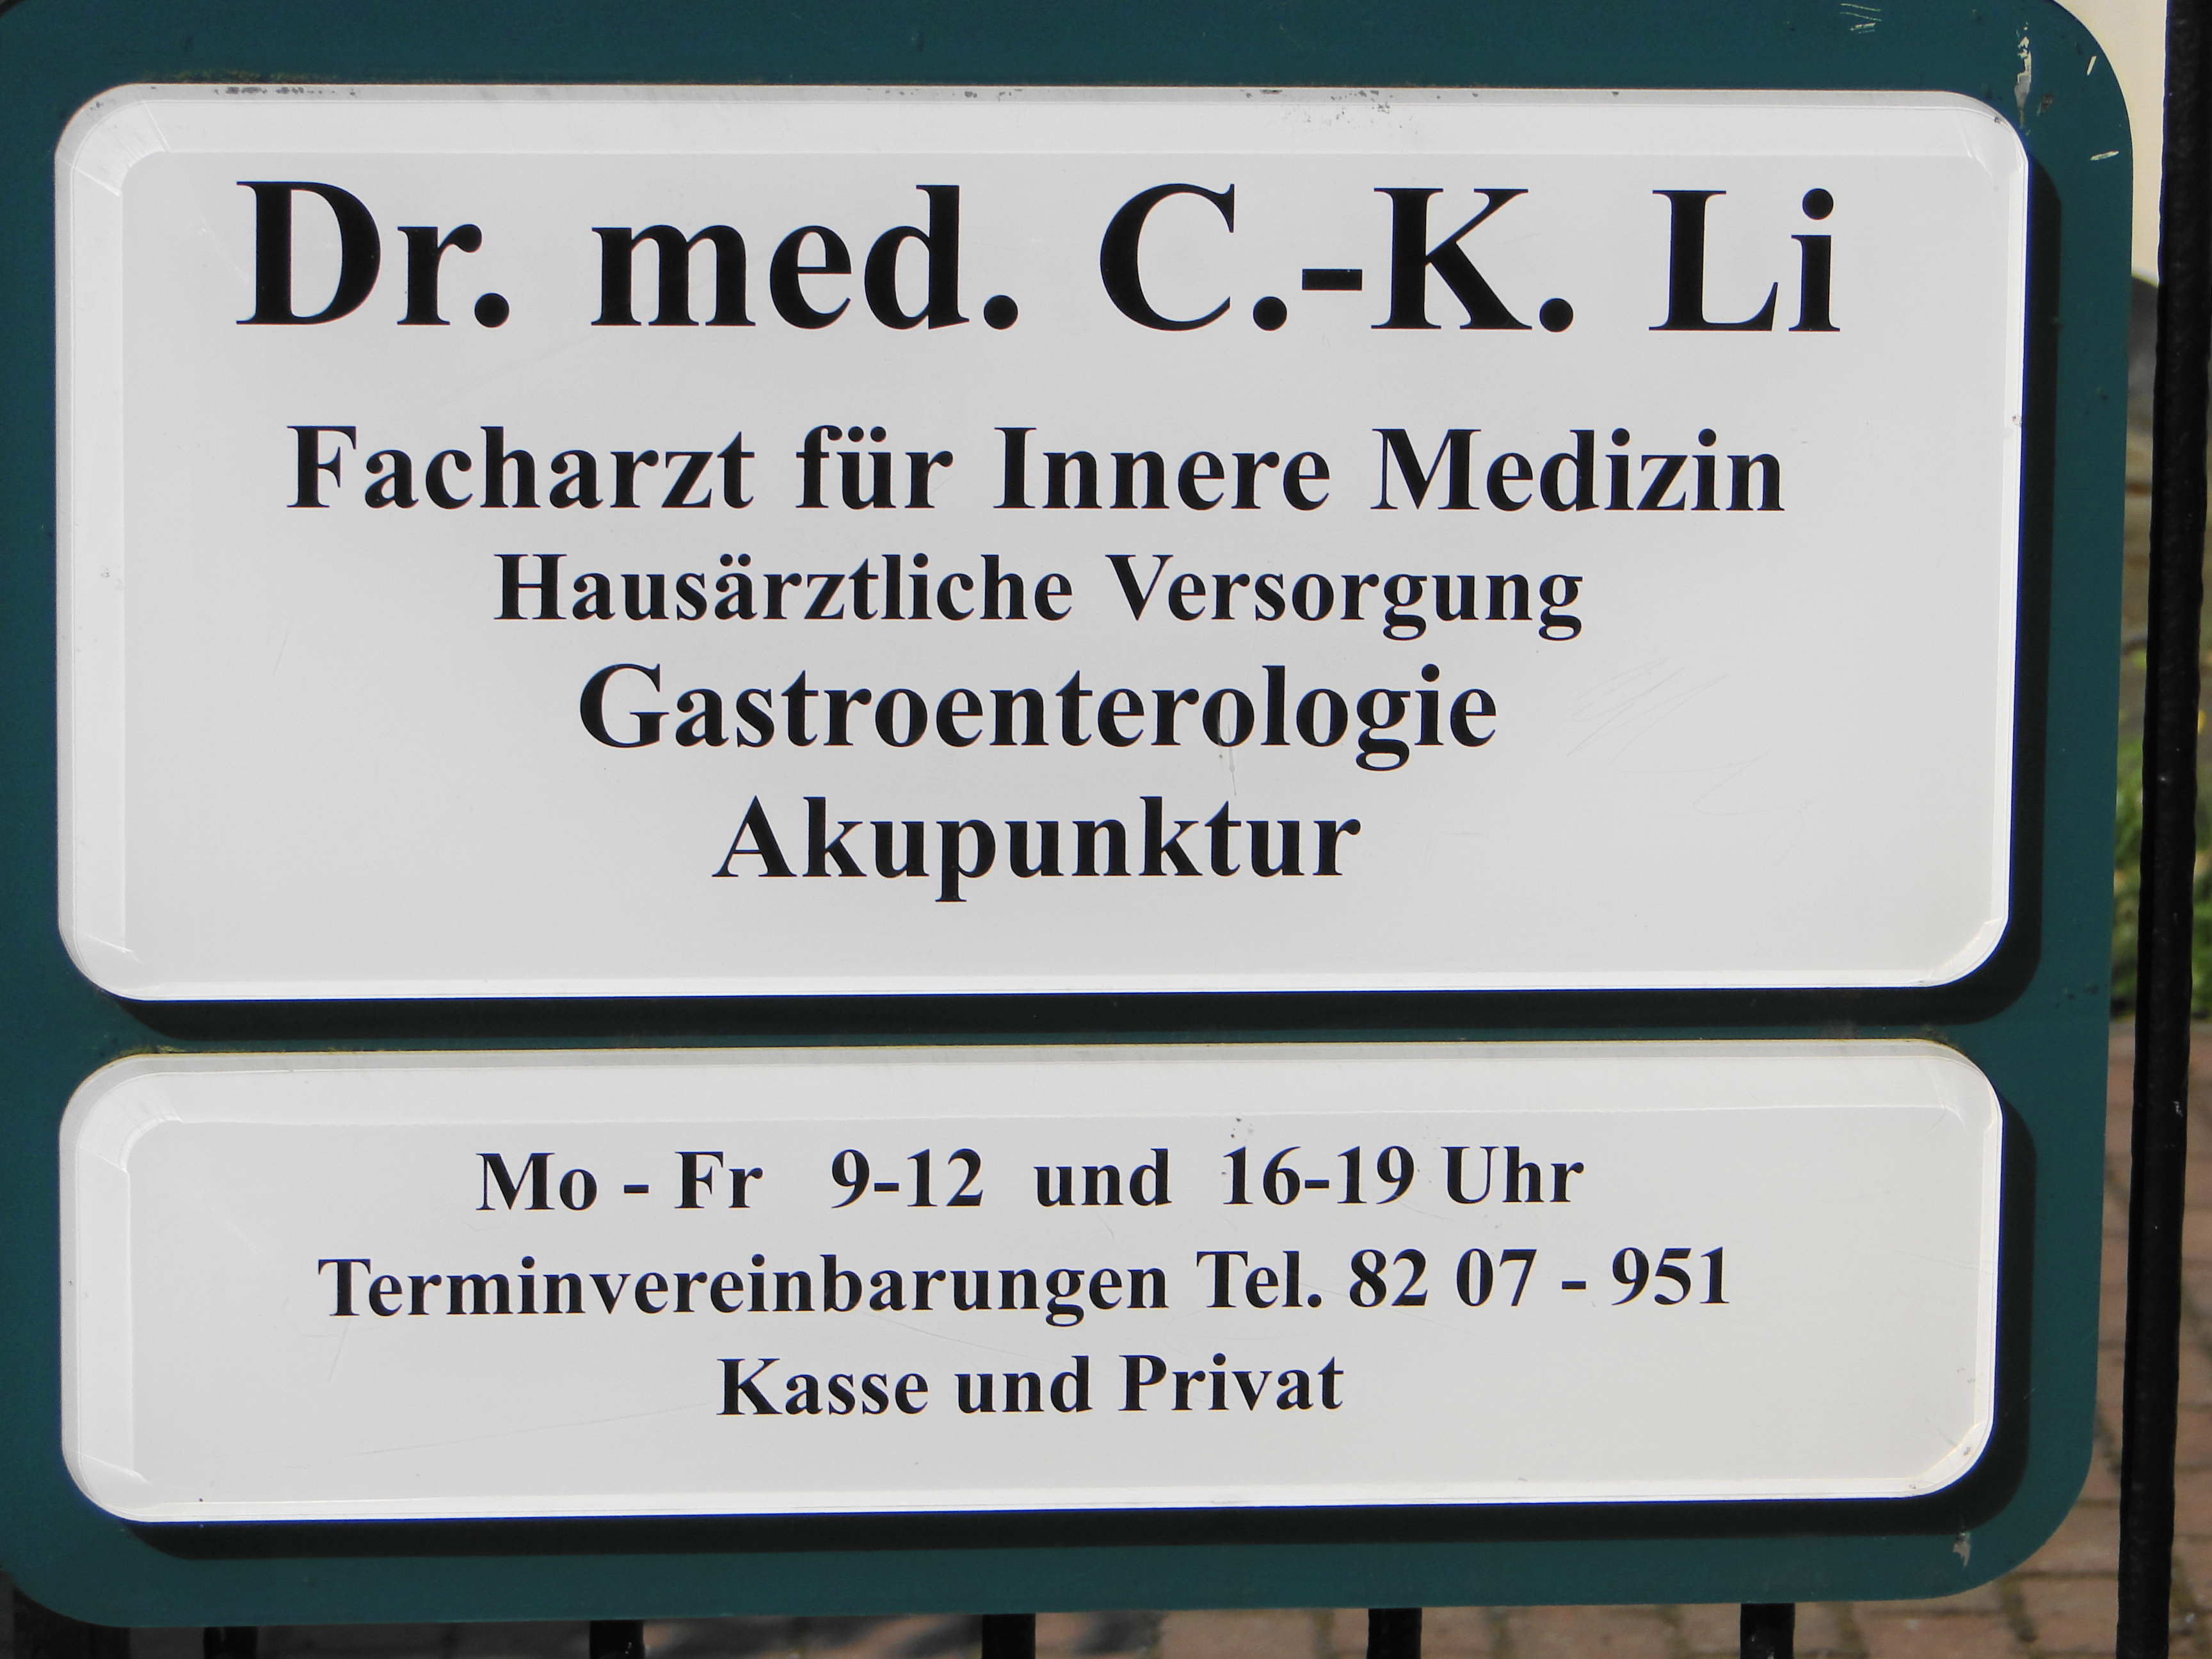 Facharzt für Innere Medizin Dr. med. K. Li in der Wagnerstr. 6